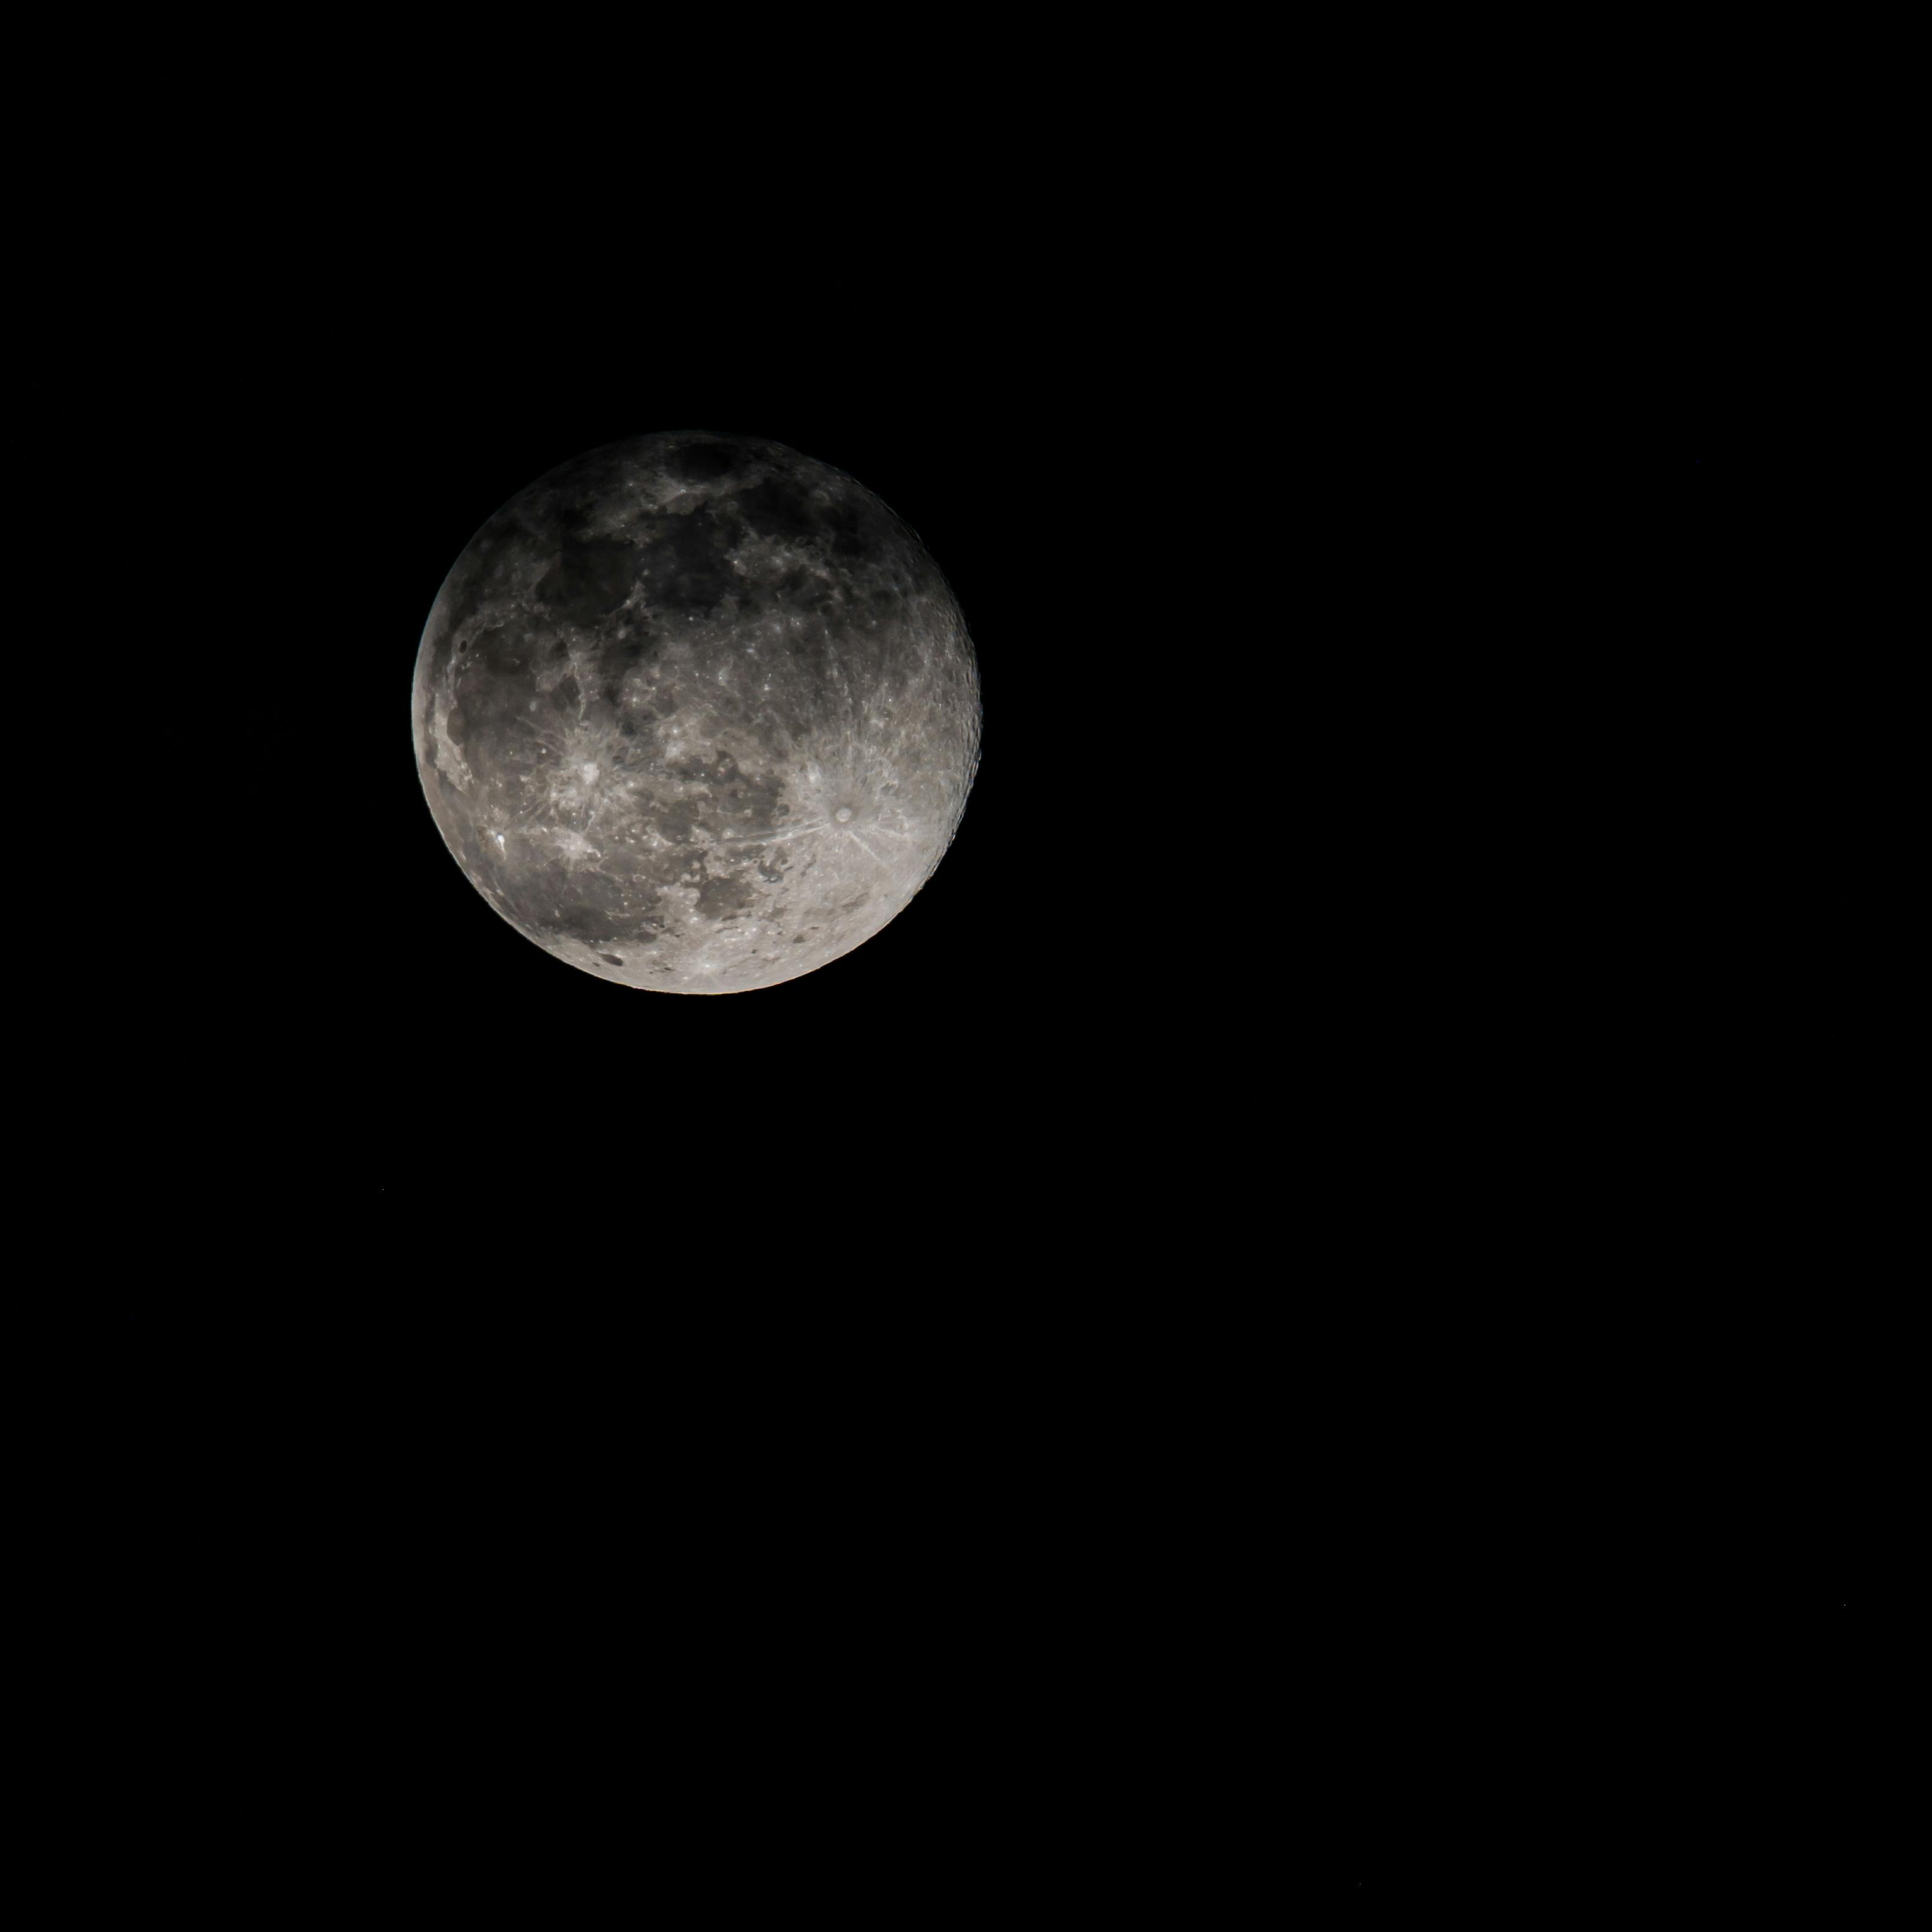 Full moon shining on black background · Free Stock Photo